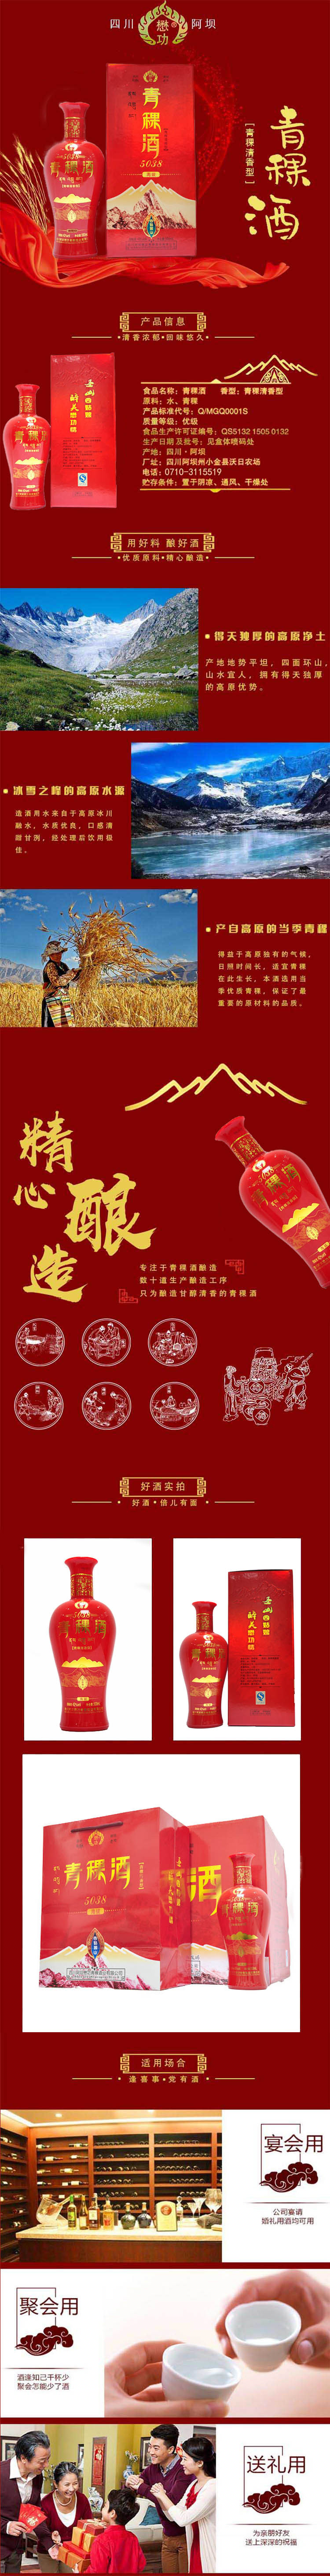 懋功 青稞酒 5038 42%vol 清香型 500ml  020913